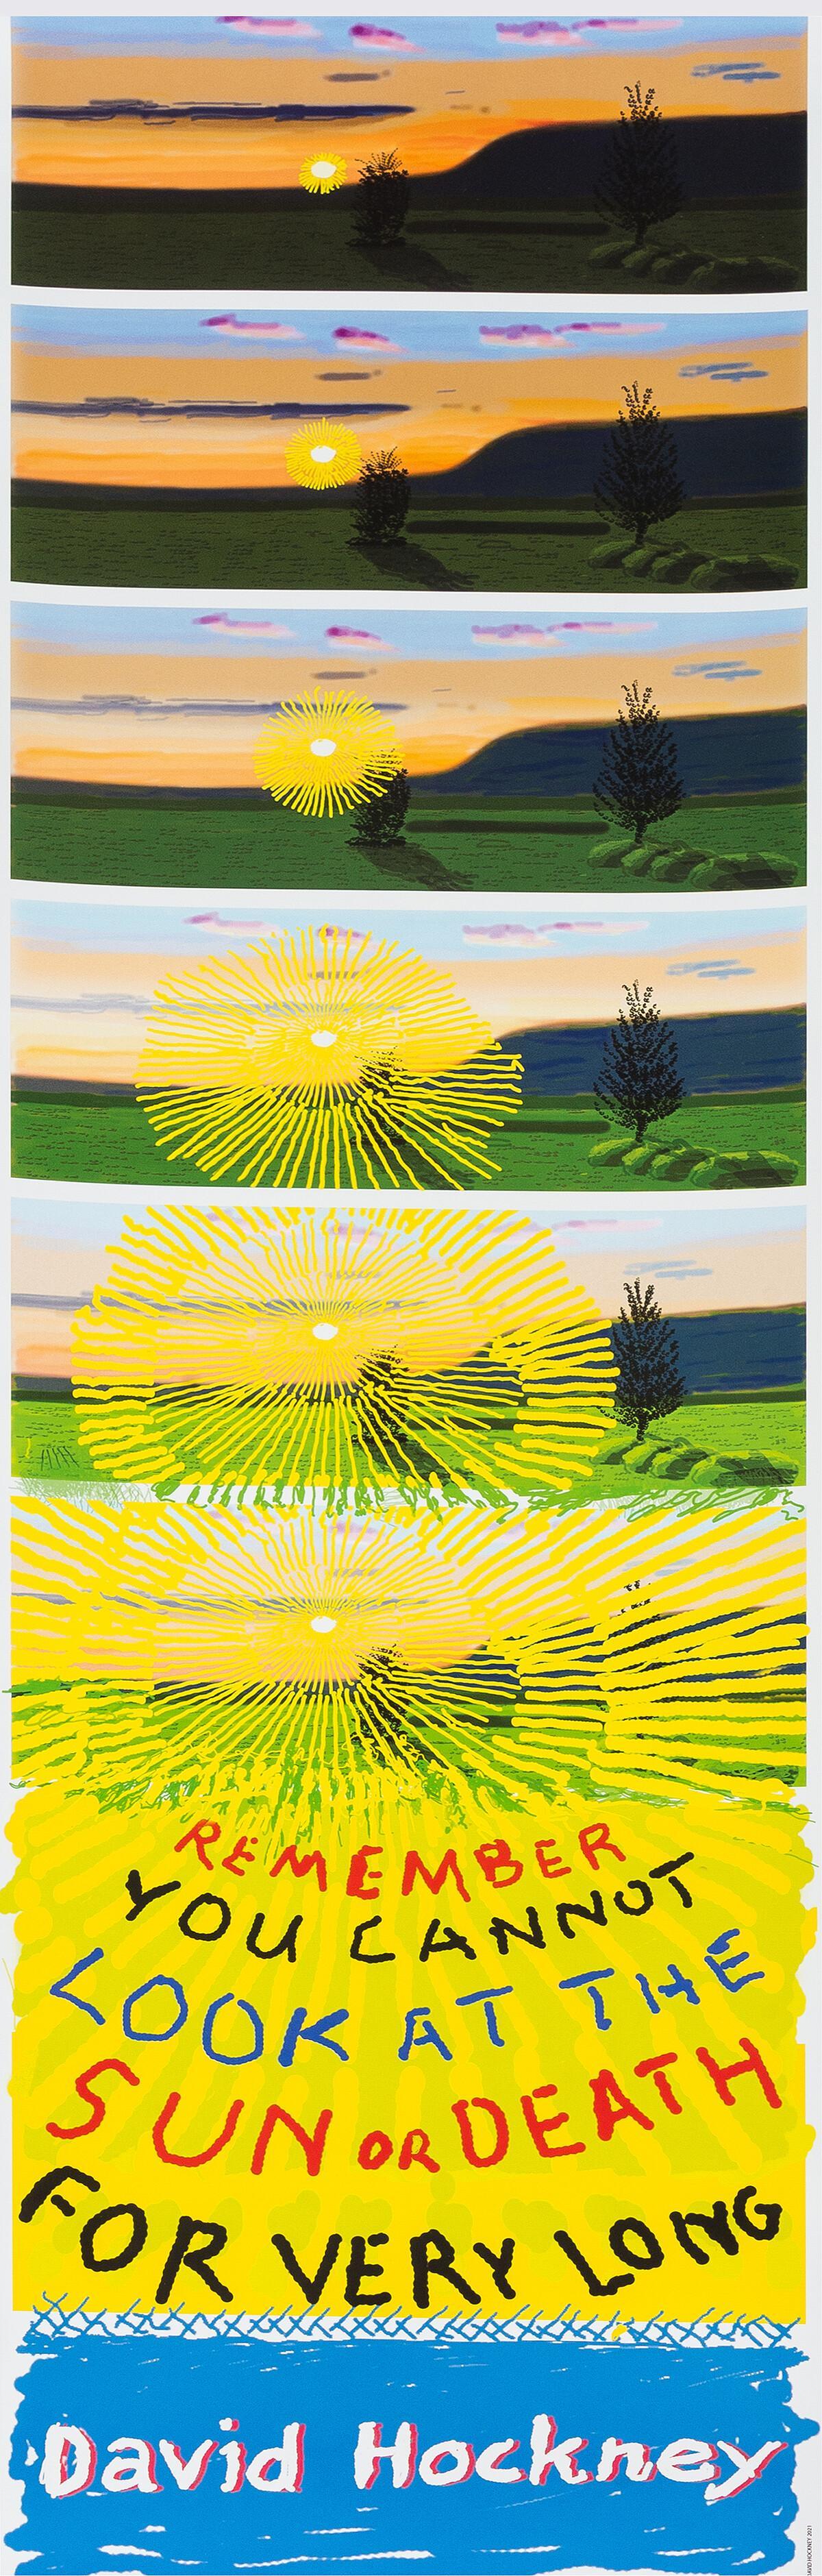 Print David Hockney - N'oubliez pas que vous ne pouvez pas regarder le soleil